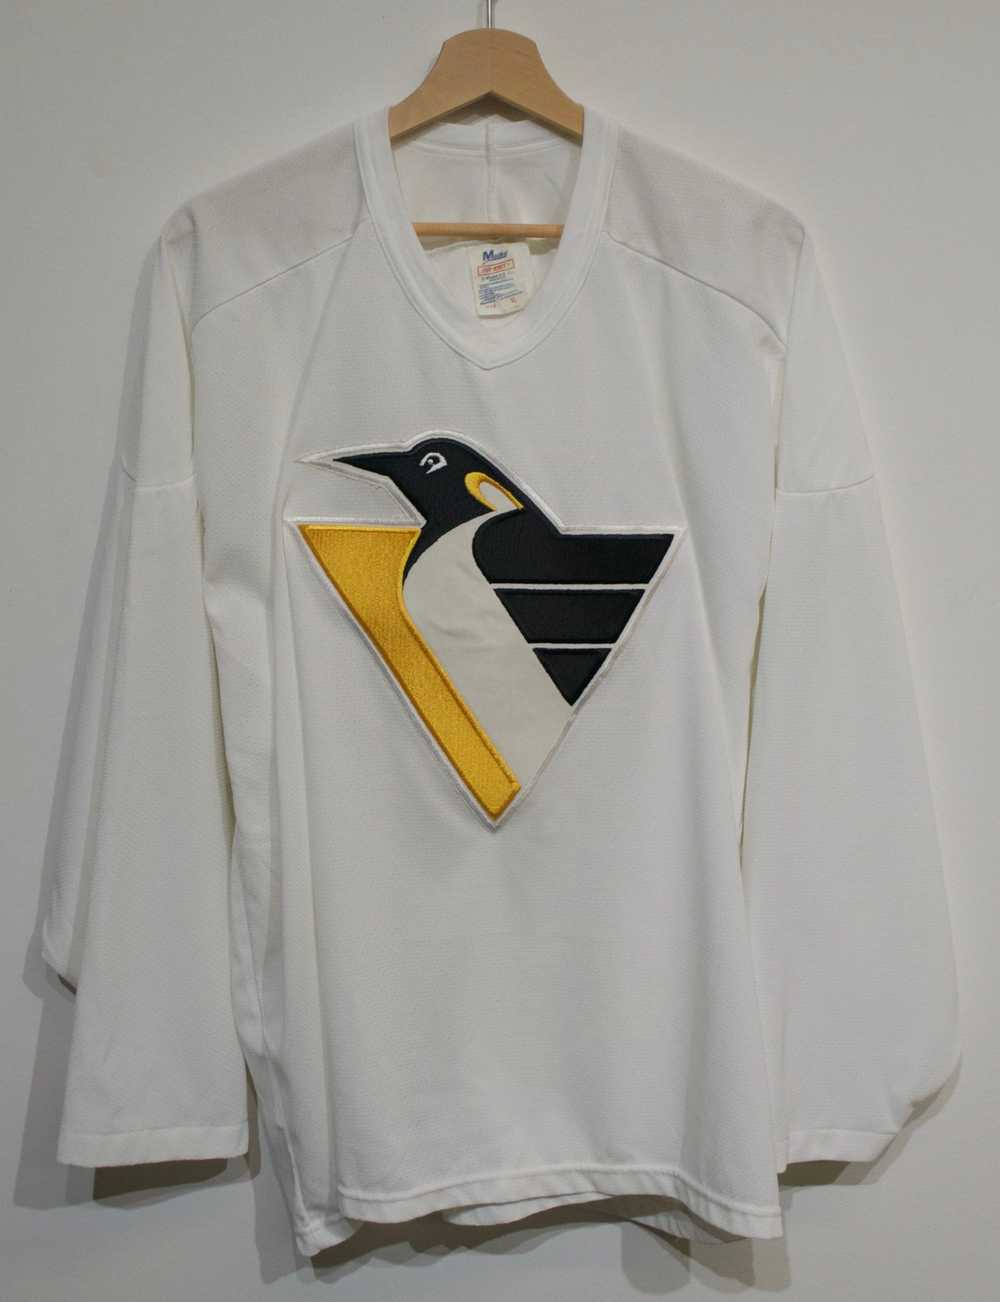 Penguins NHL Vintage CCM Team Worn Jersey